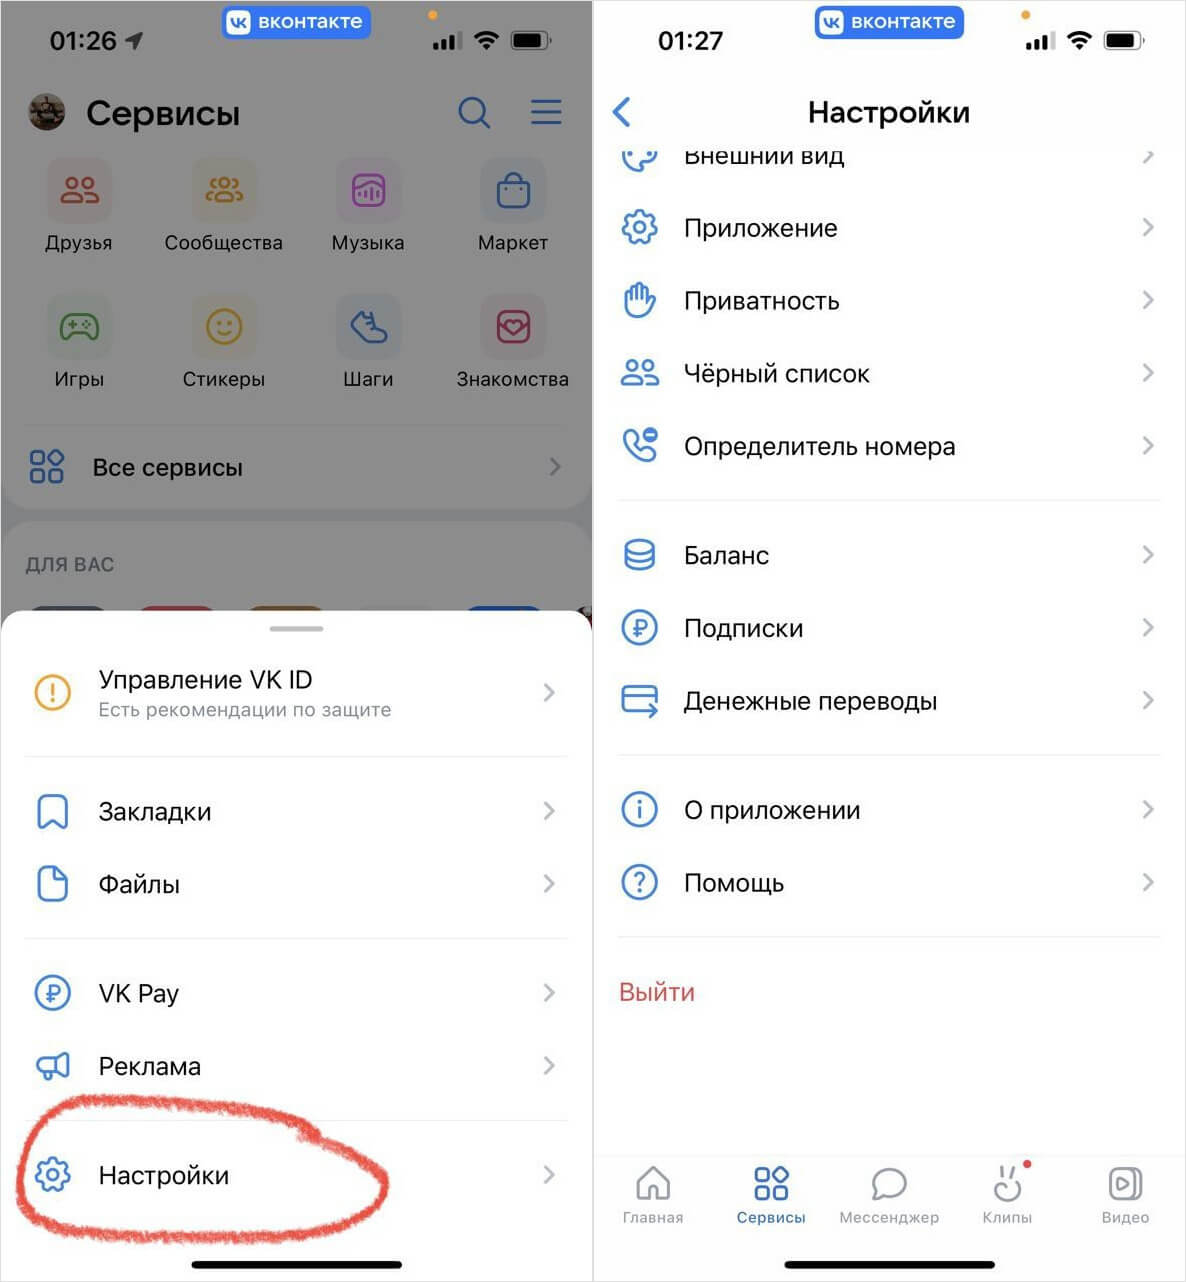 Как сделать окно ВКонтакте на весь экран: подробная инструкция